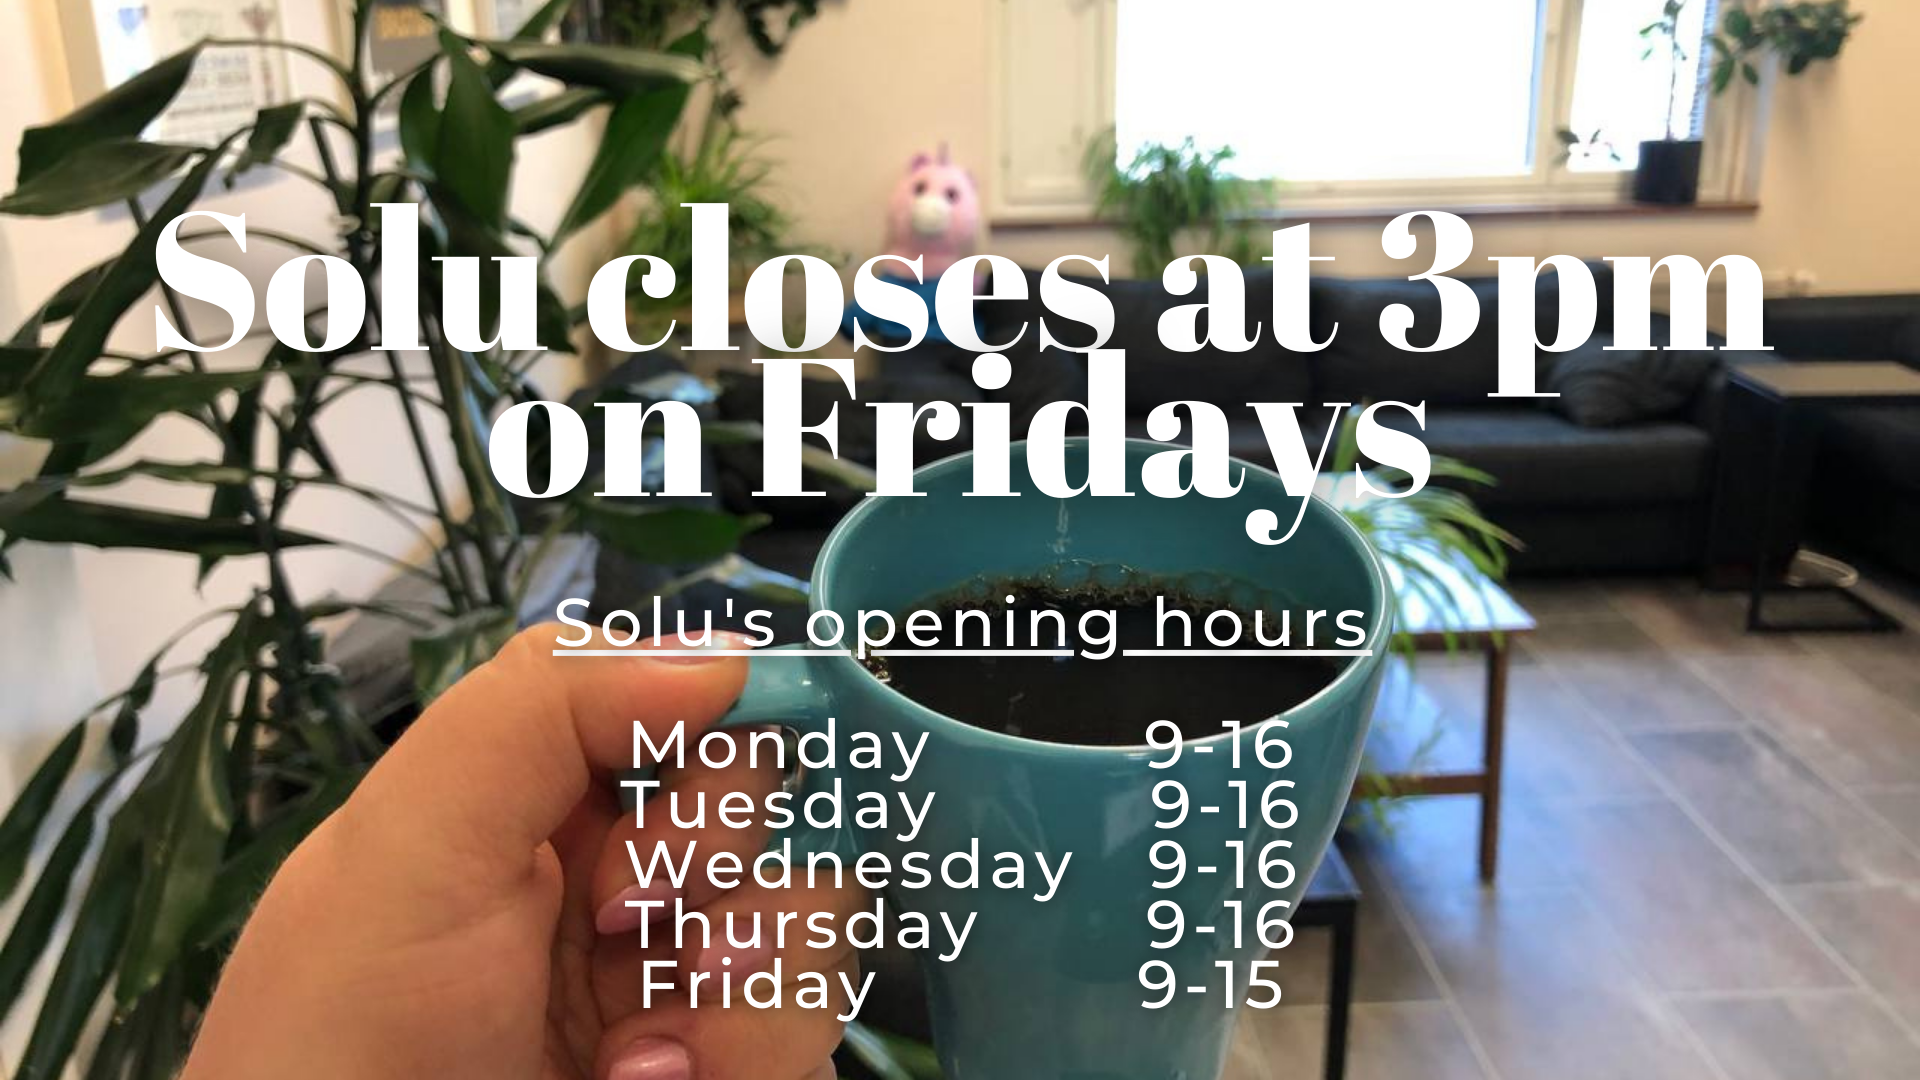 Solu closes at 3pm on Fridays